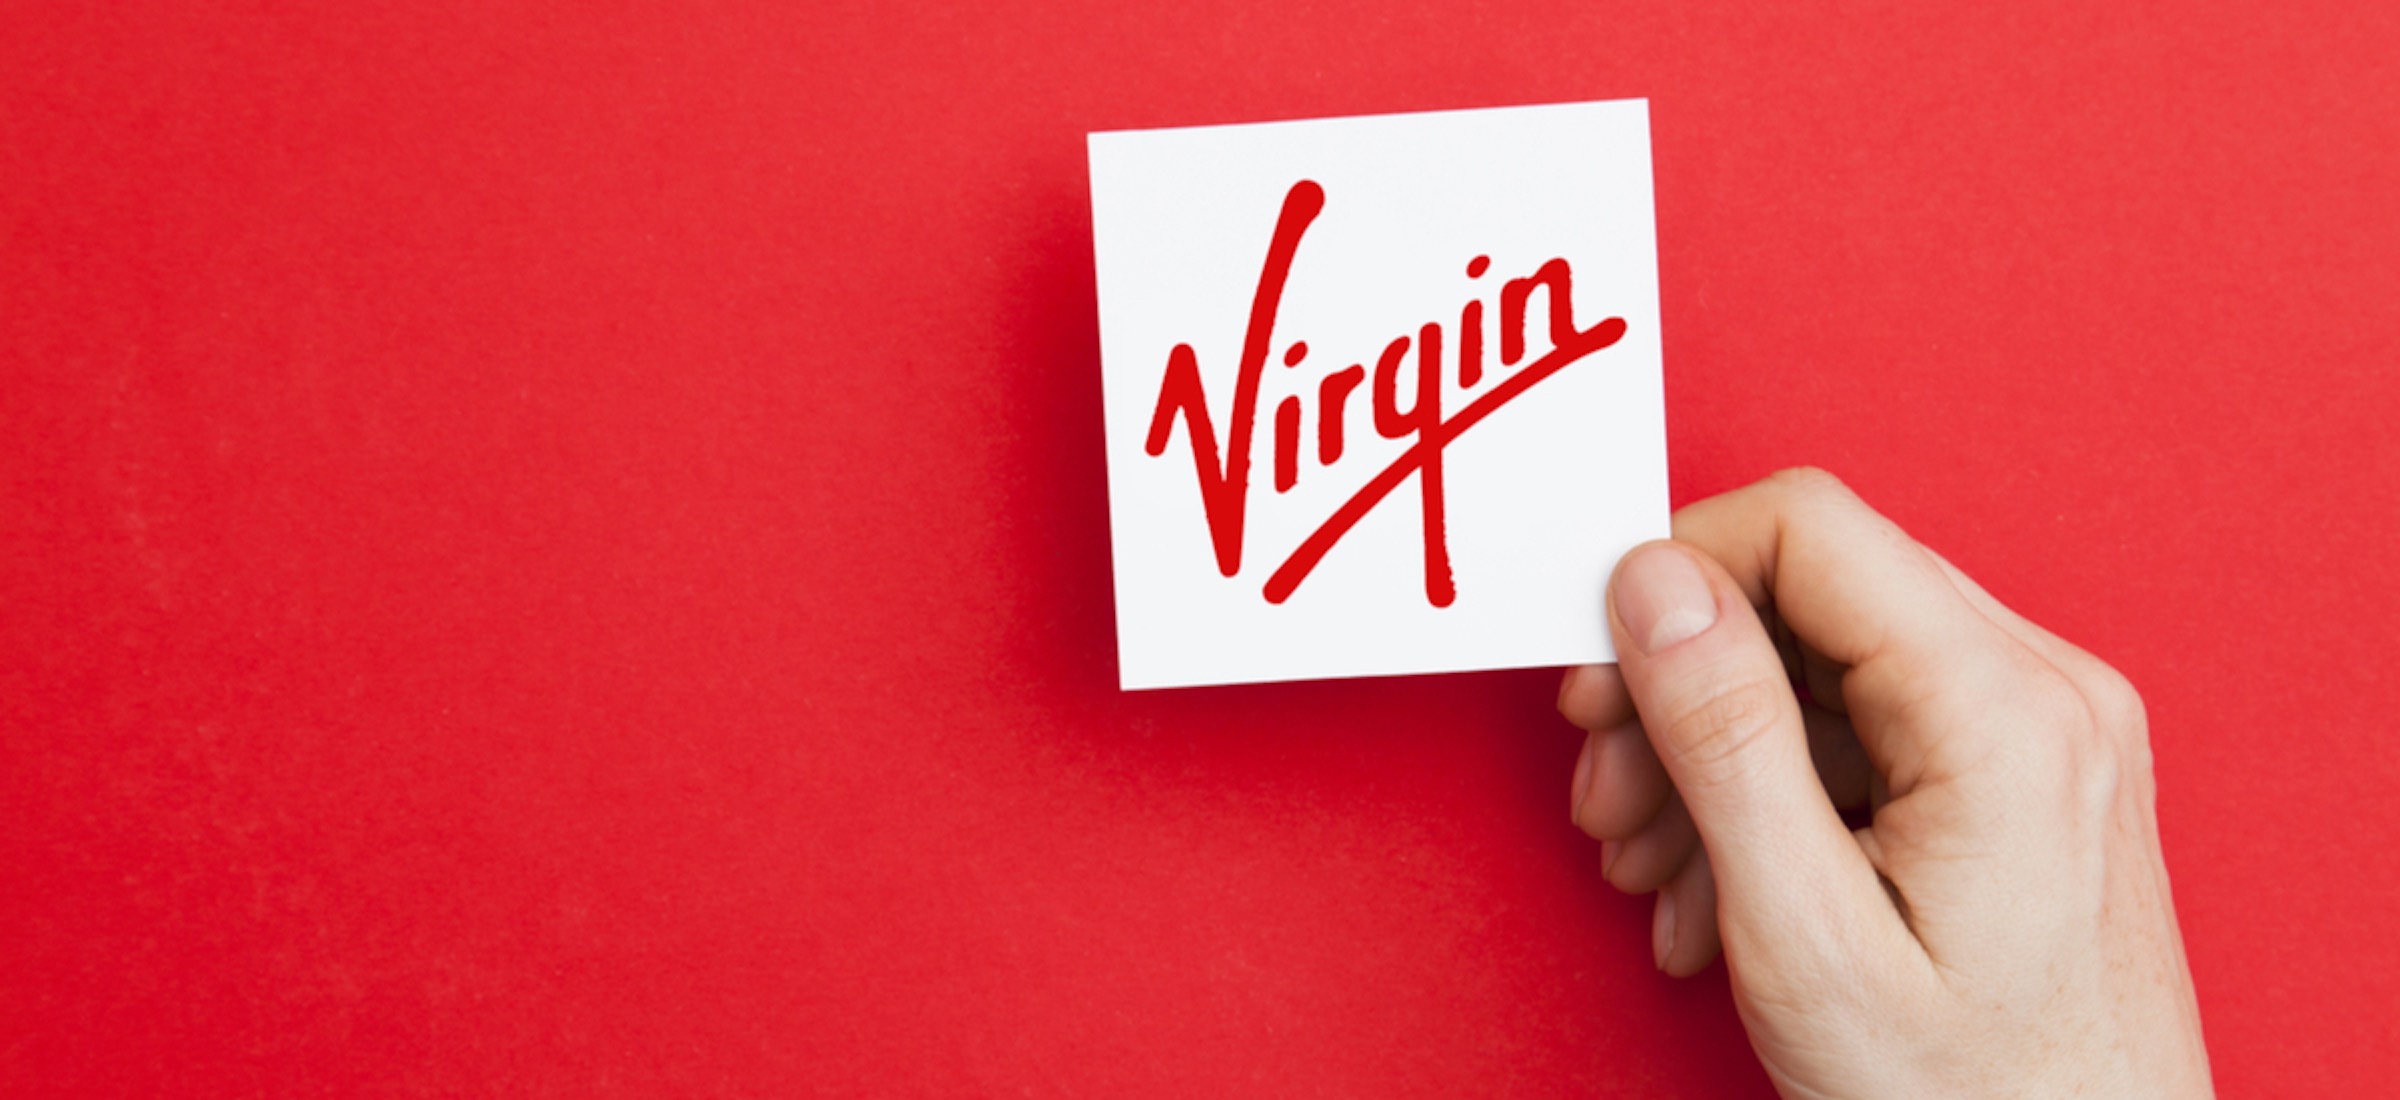 Virgin cocks. Бренд Virgin. Компания Верджин. Логотип Virgin. Virgin Group компании.